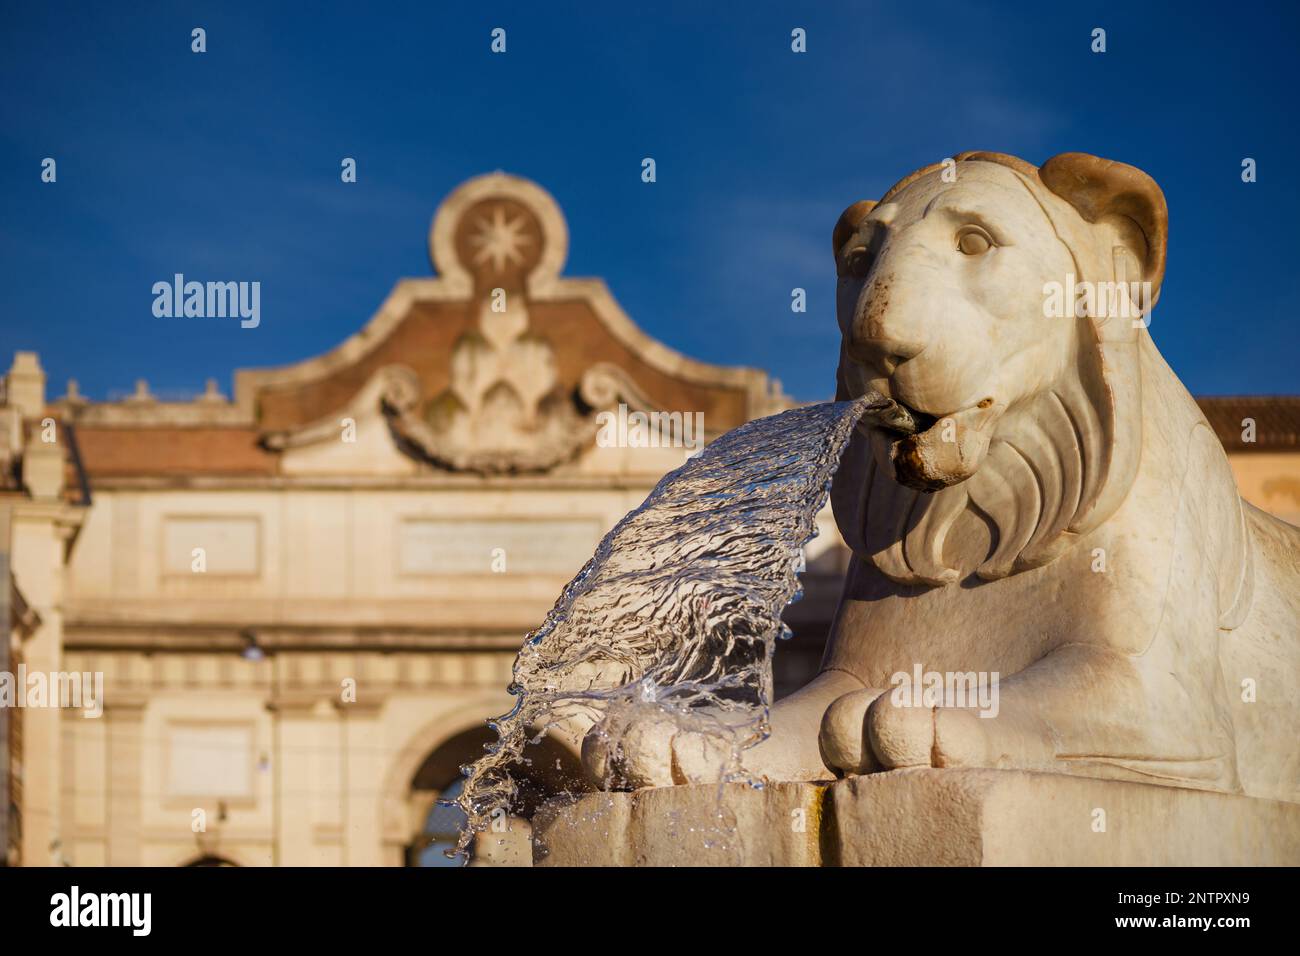 Lion égyptien en marbre de la fontaine centrale de la place du peuple dans le centre de Rome (érigé en 1823), avec mur de la ville ancienne porte en arrière-plan Banque D'Images